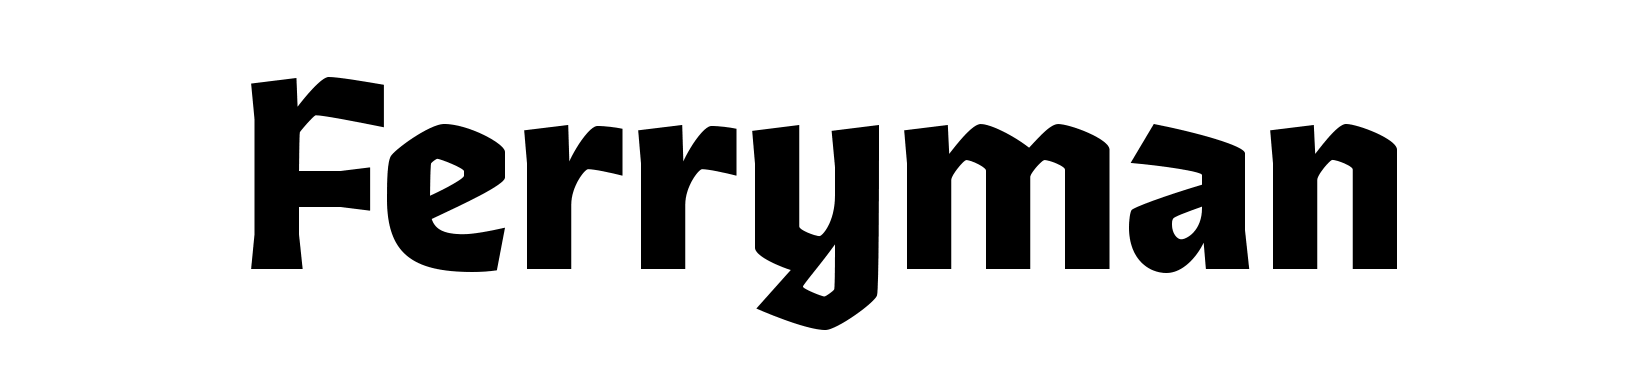 Ferryman Typeface